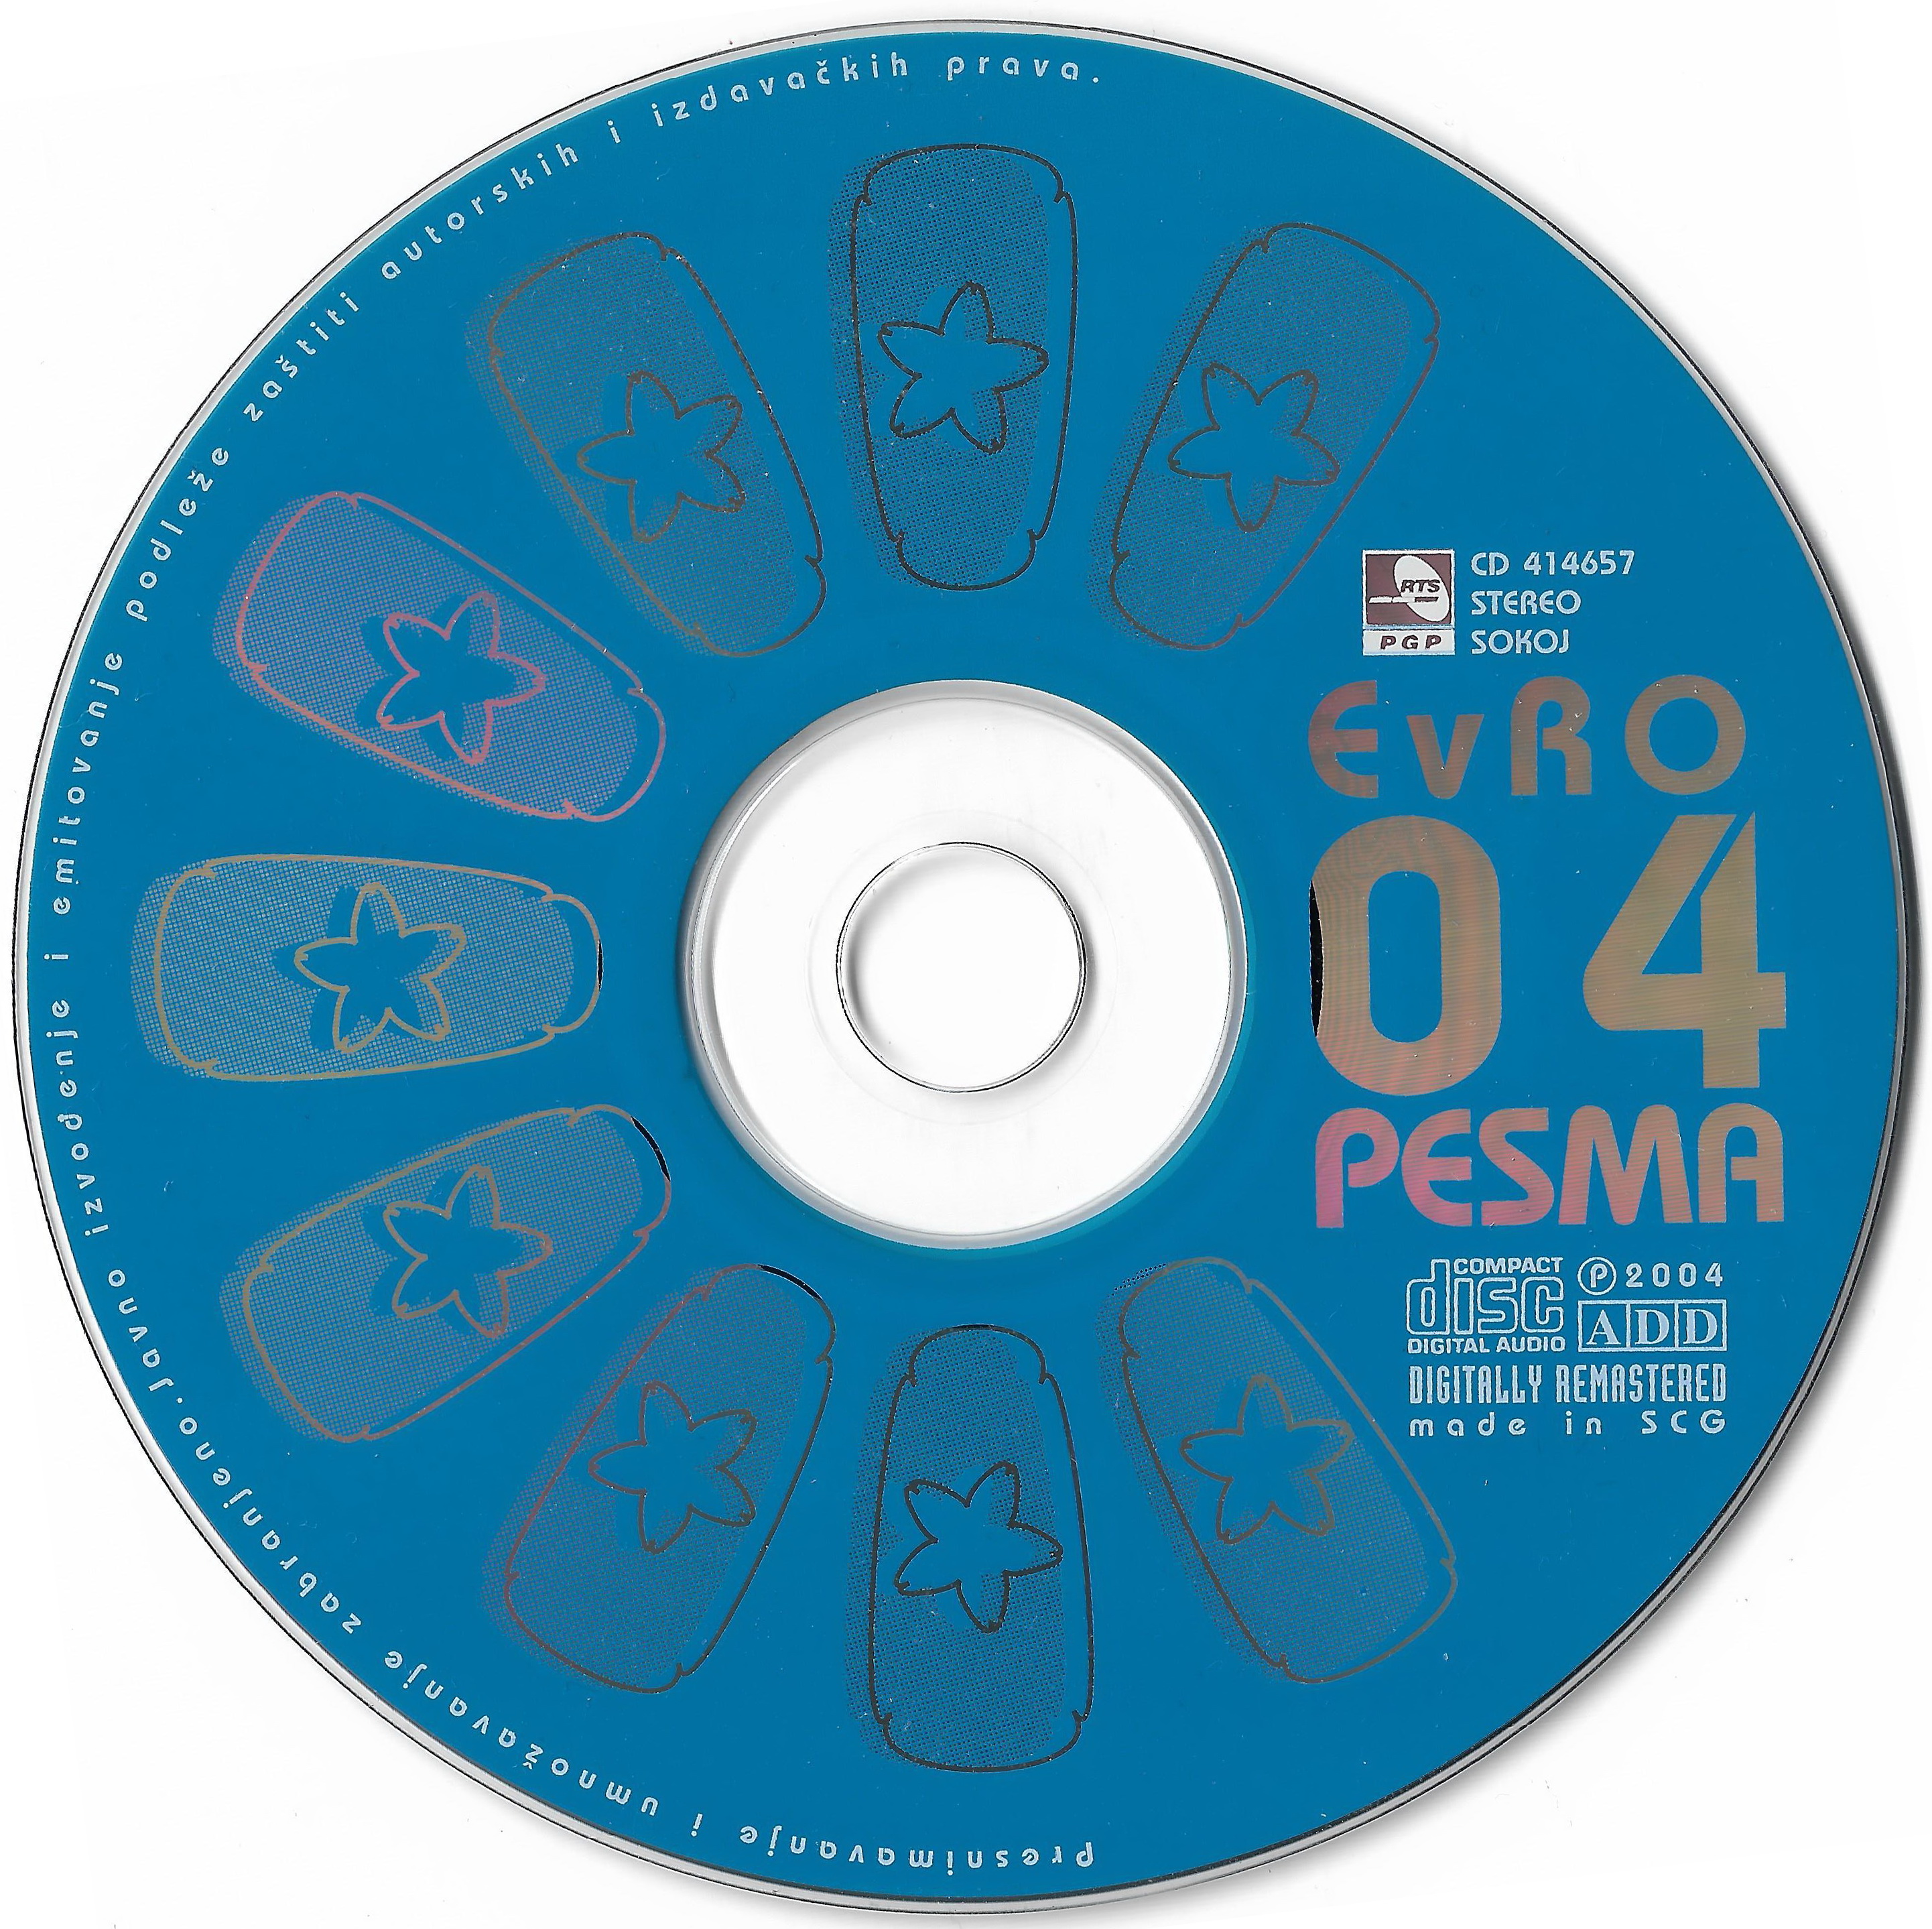 Evropesma 2004 CD